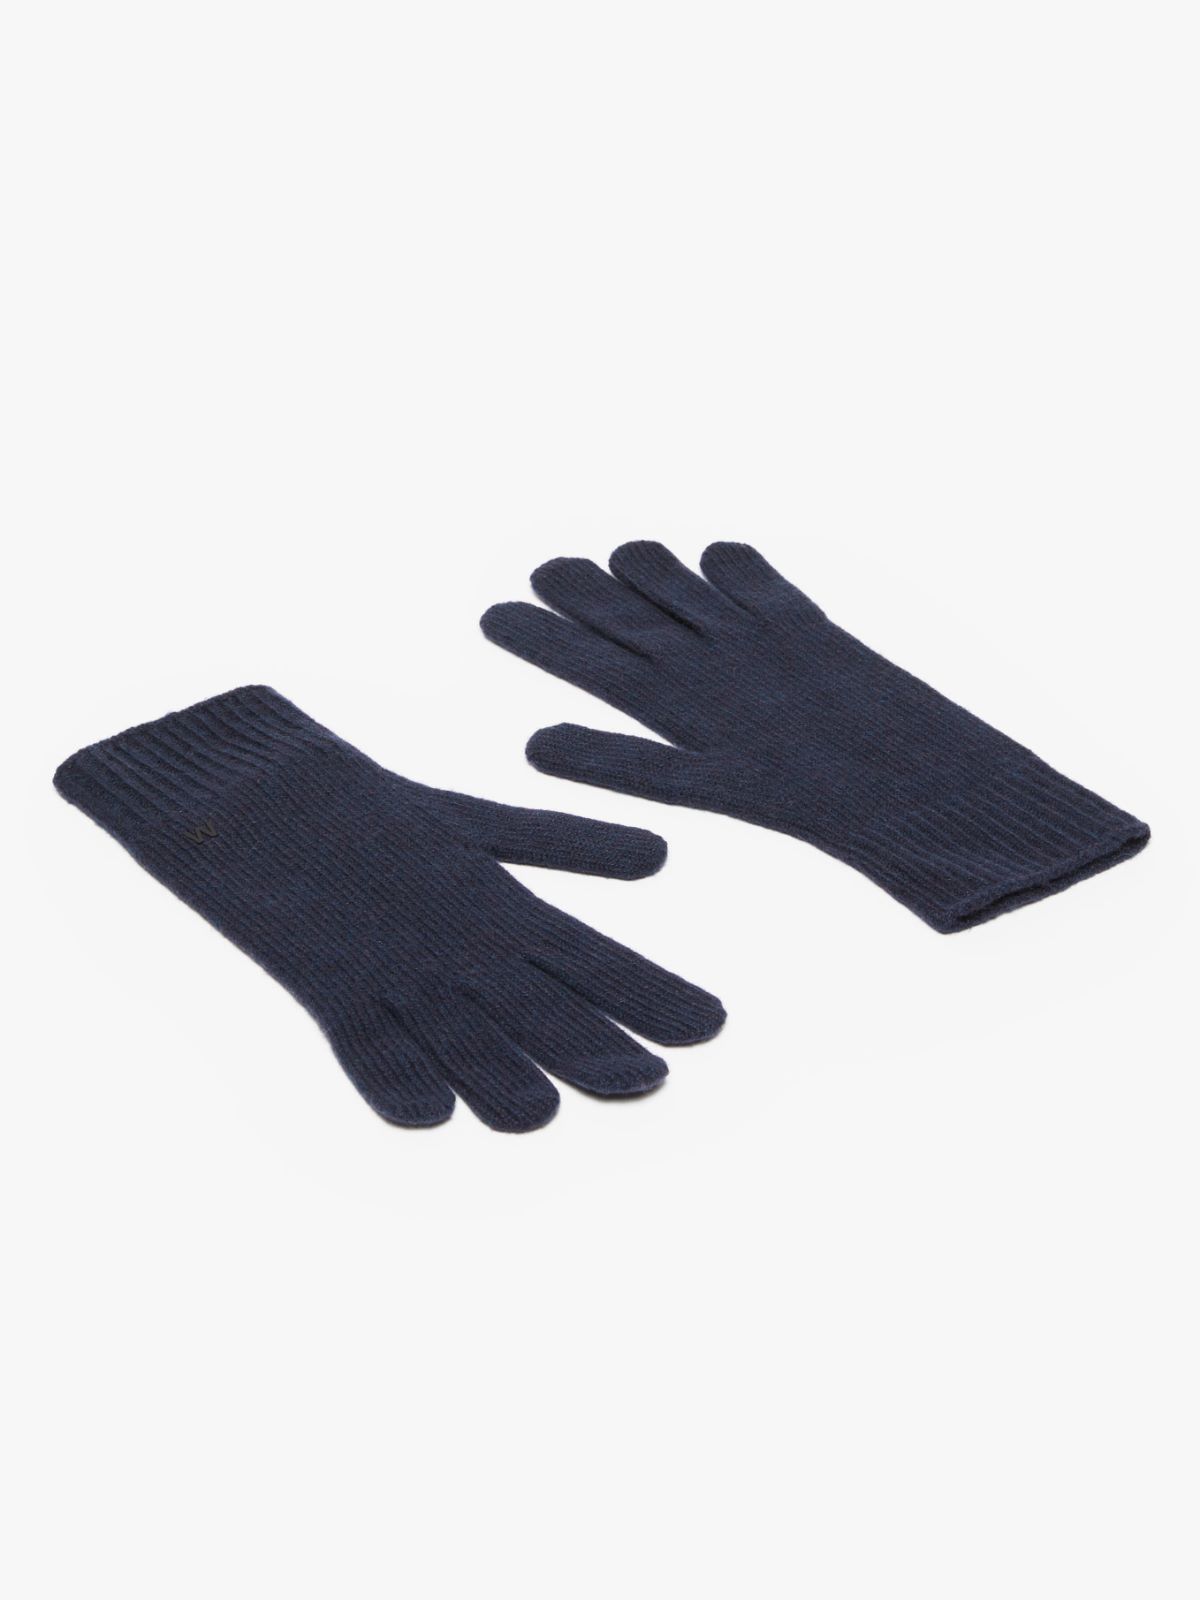 Cashmere gloves - MIDNIGHTBLUE - Weekend Max Mara